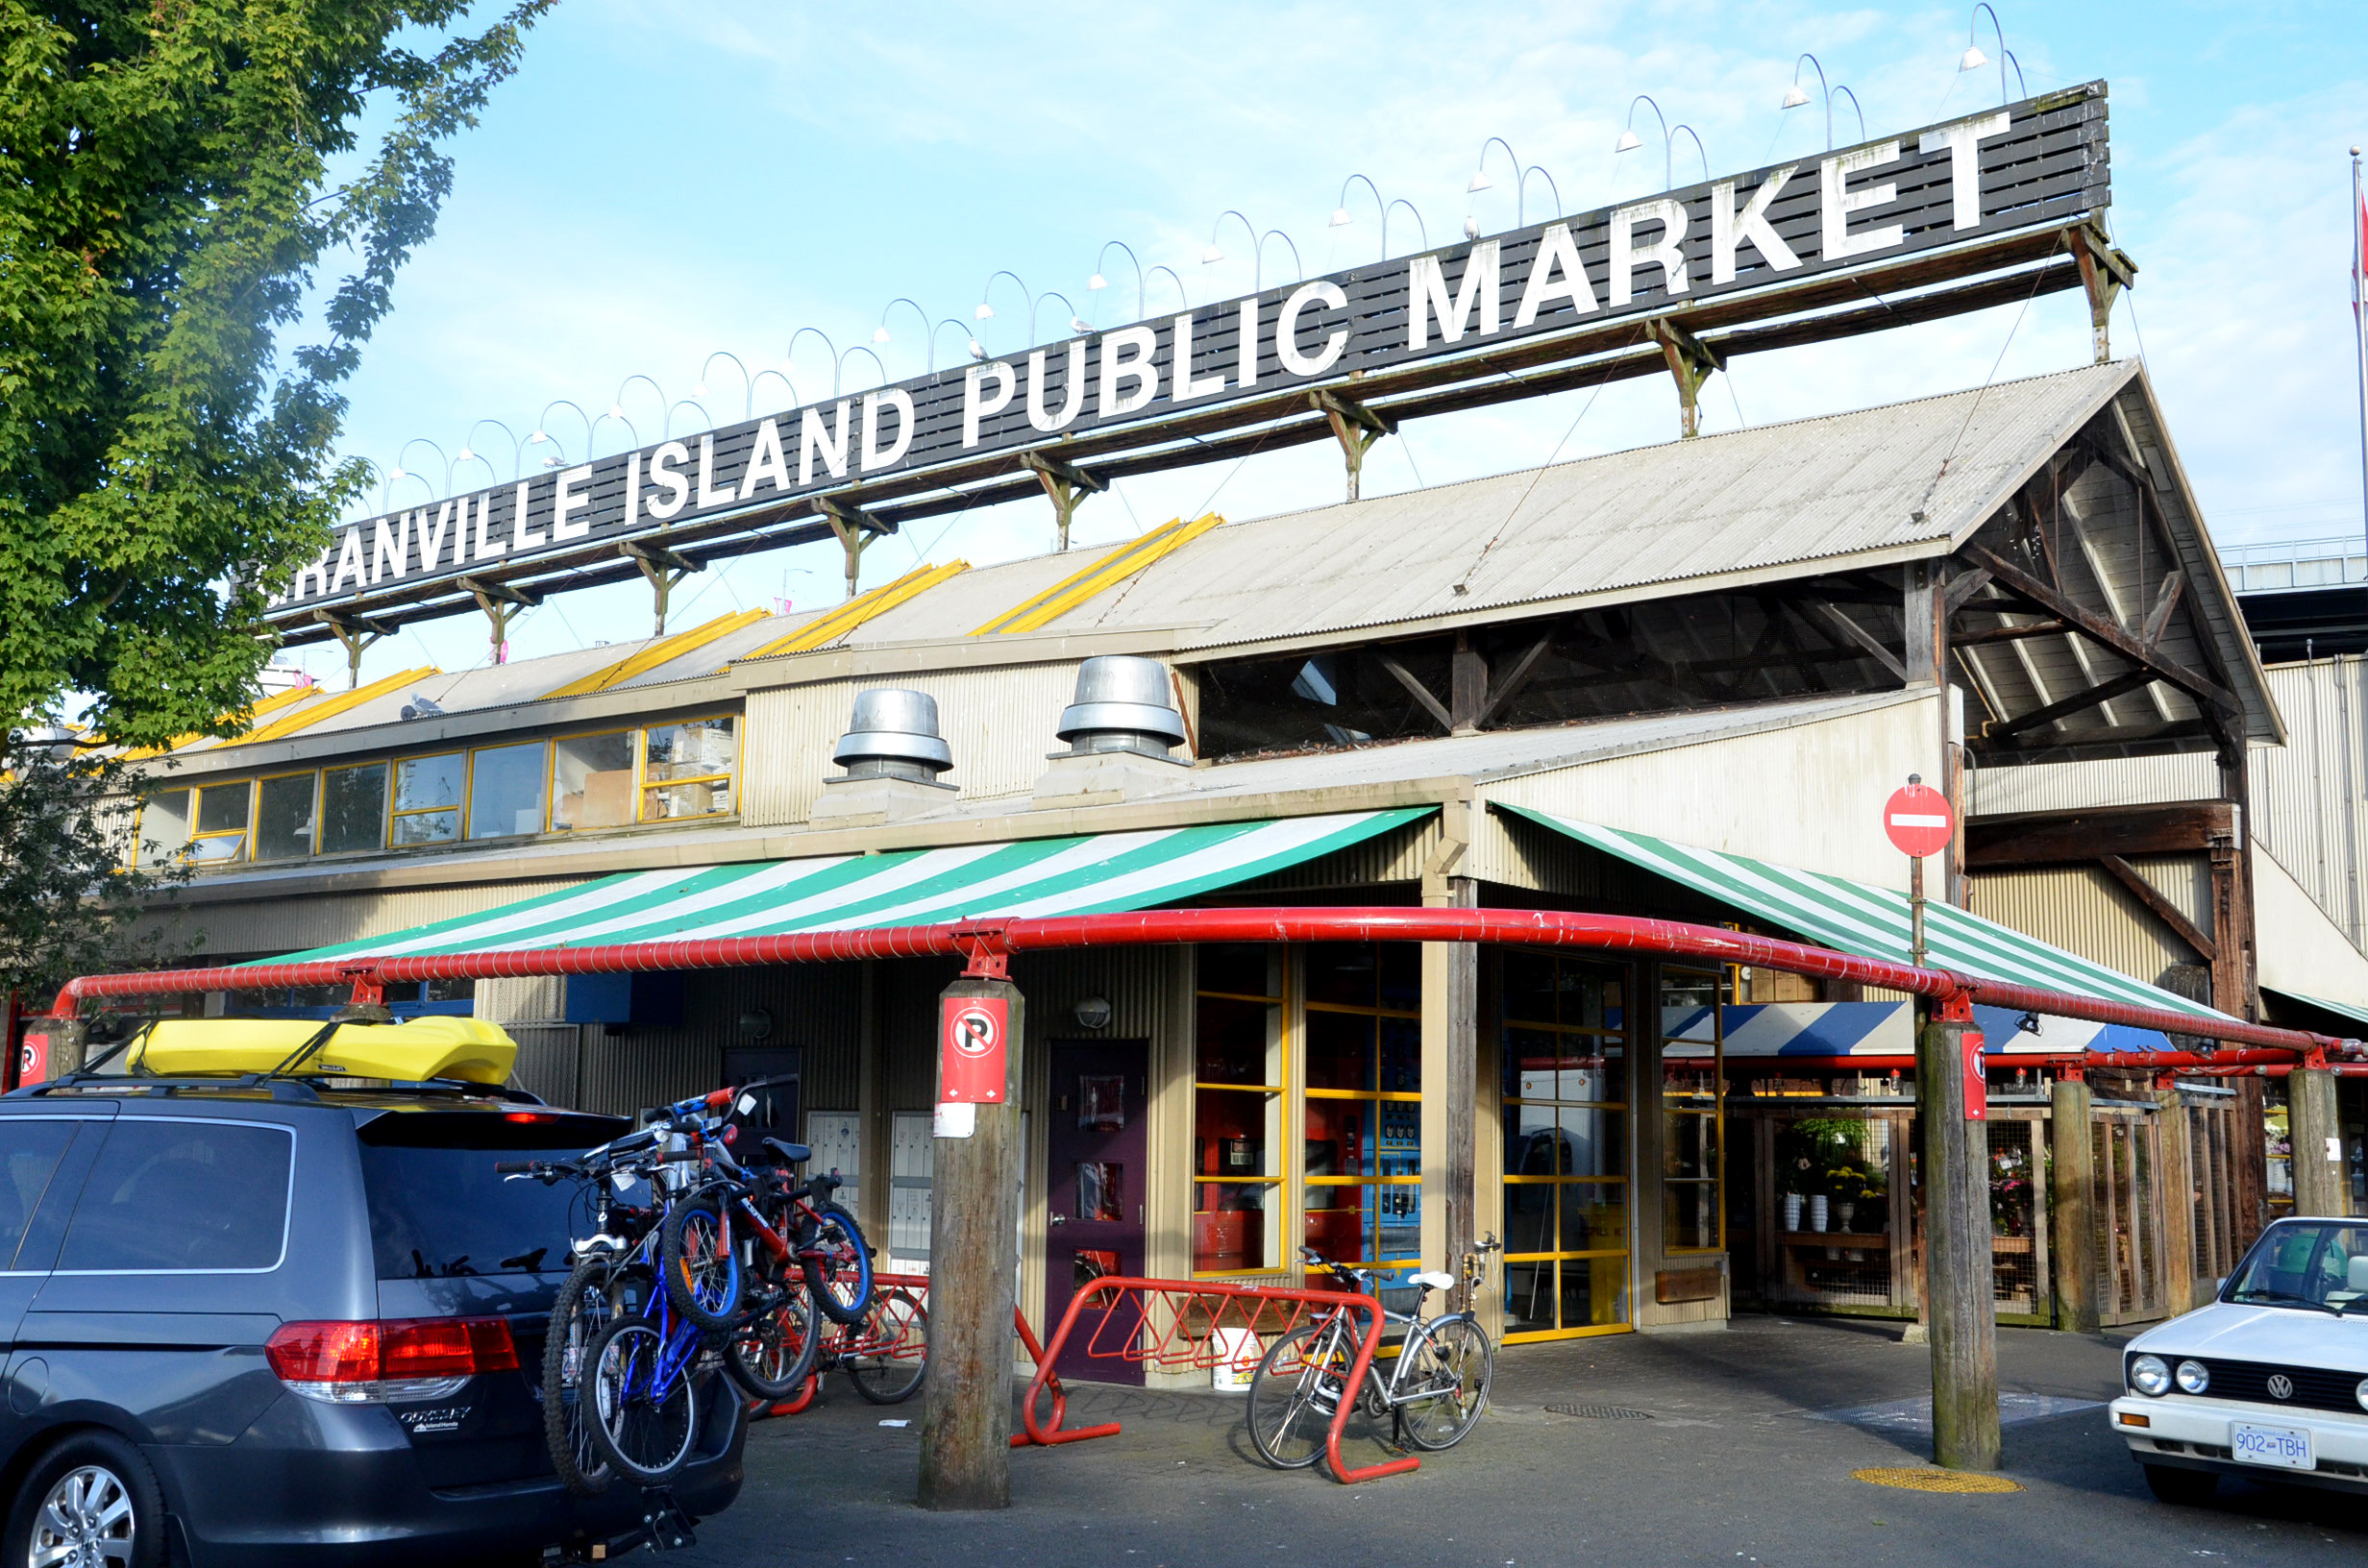 Photo Essay: Granville Island Public Market in Vancouver - Maiden Voyage